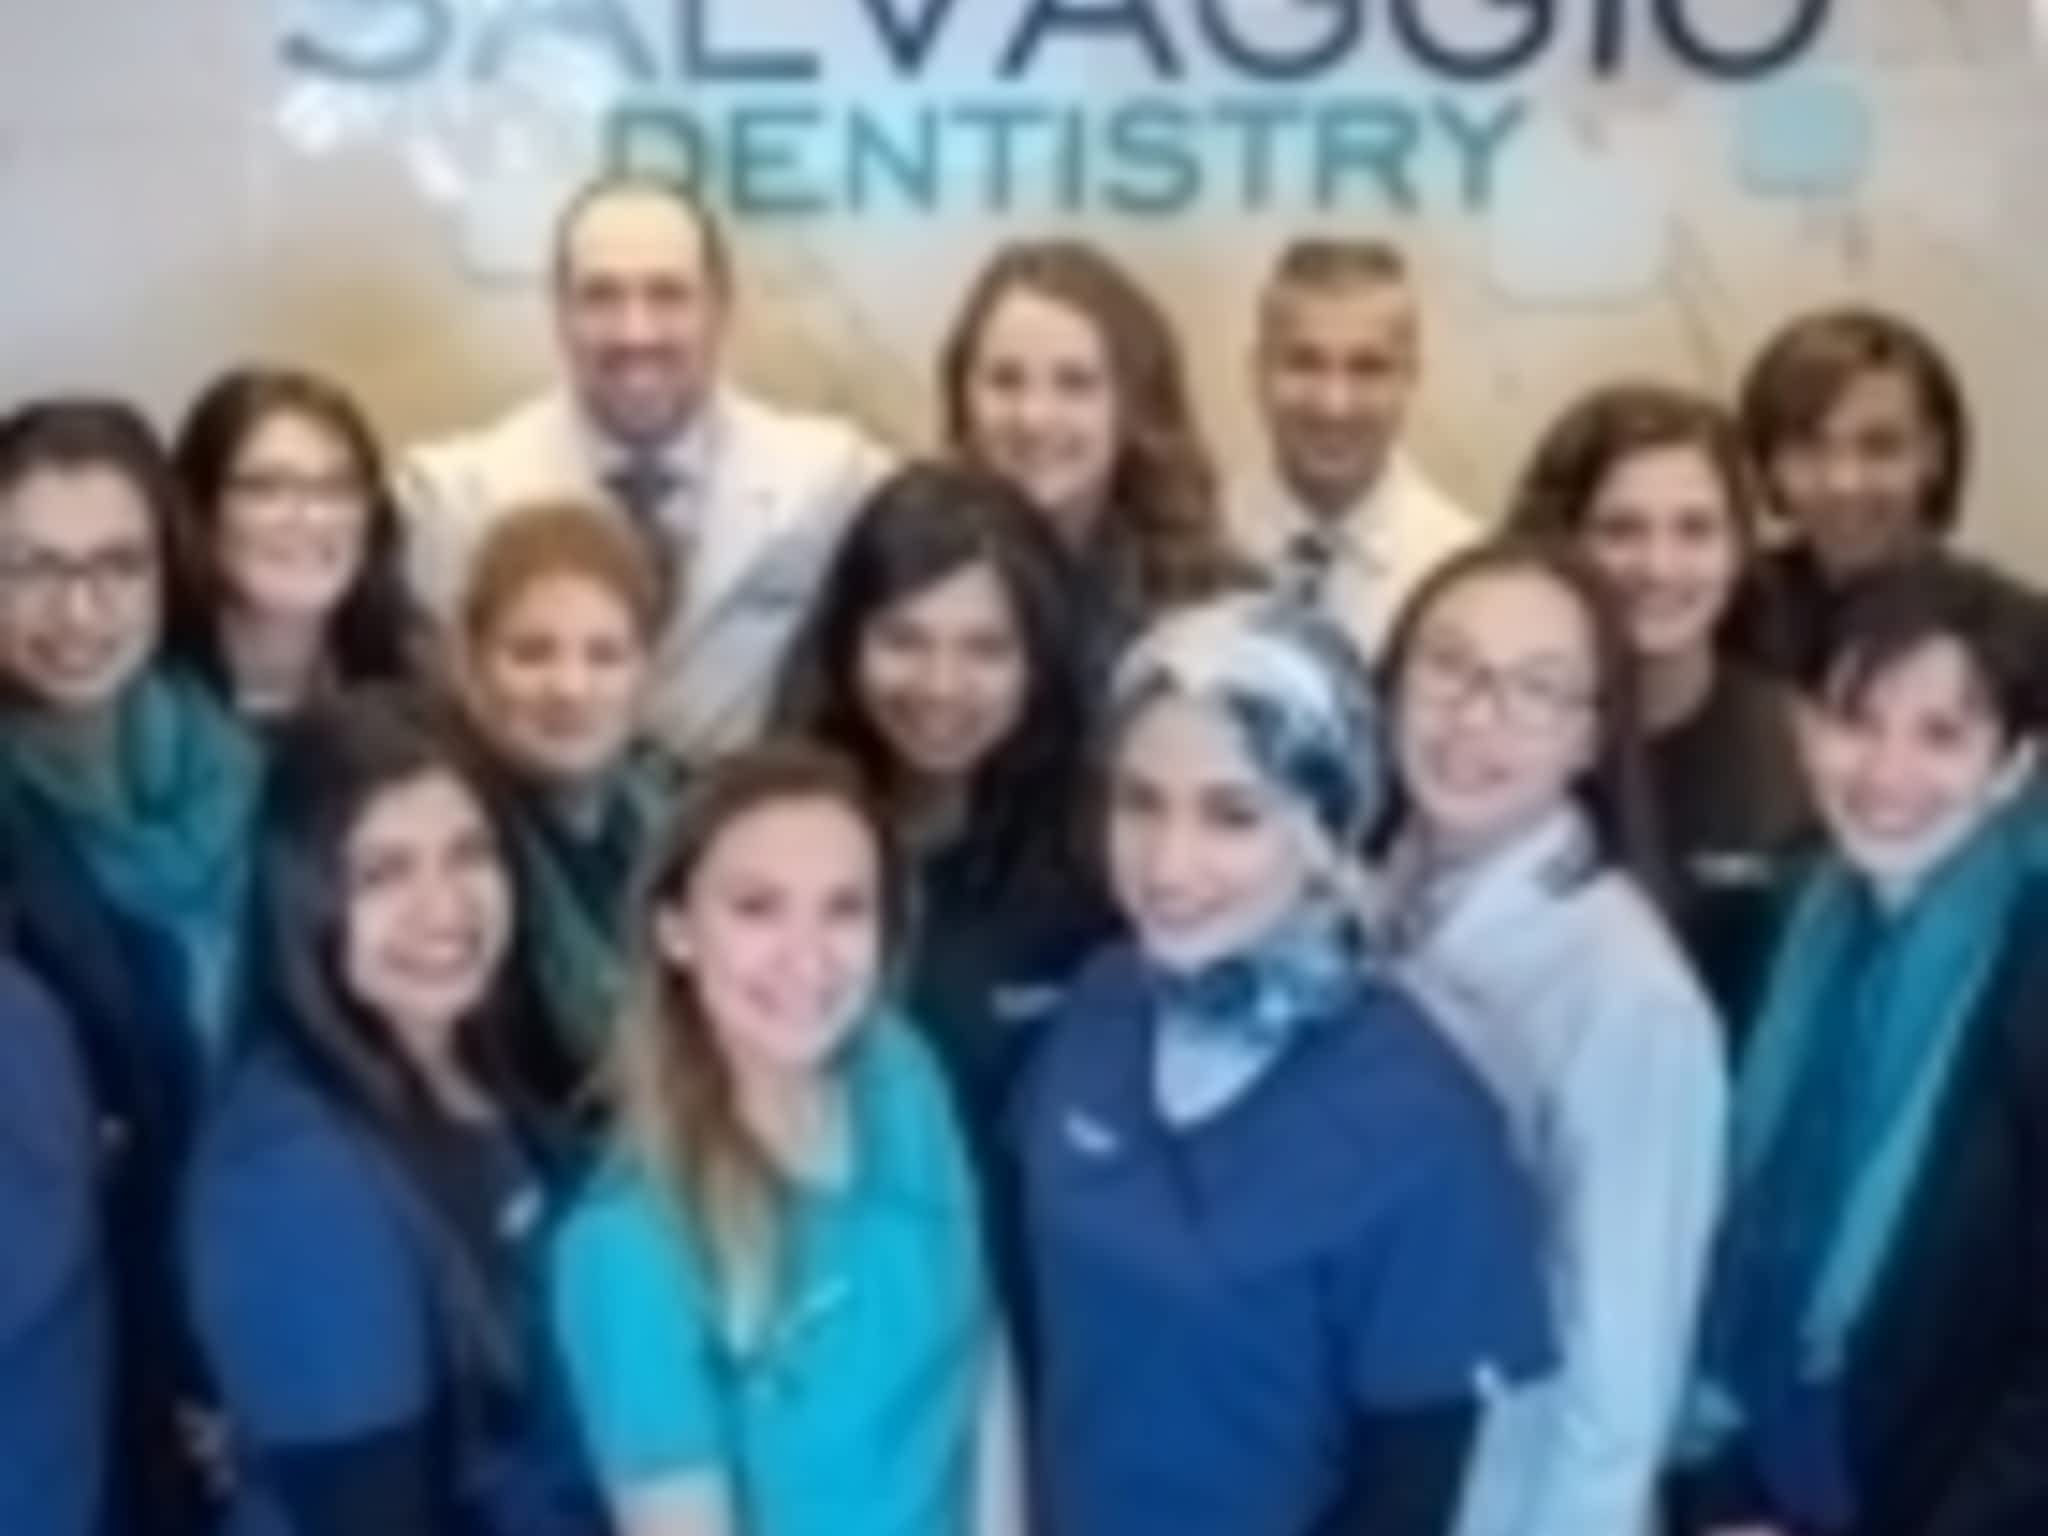 photo Salvaggio Dentistry